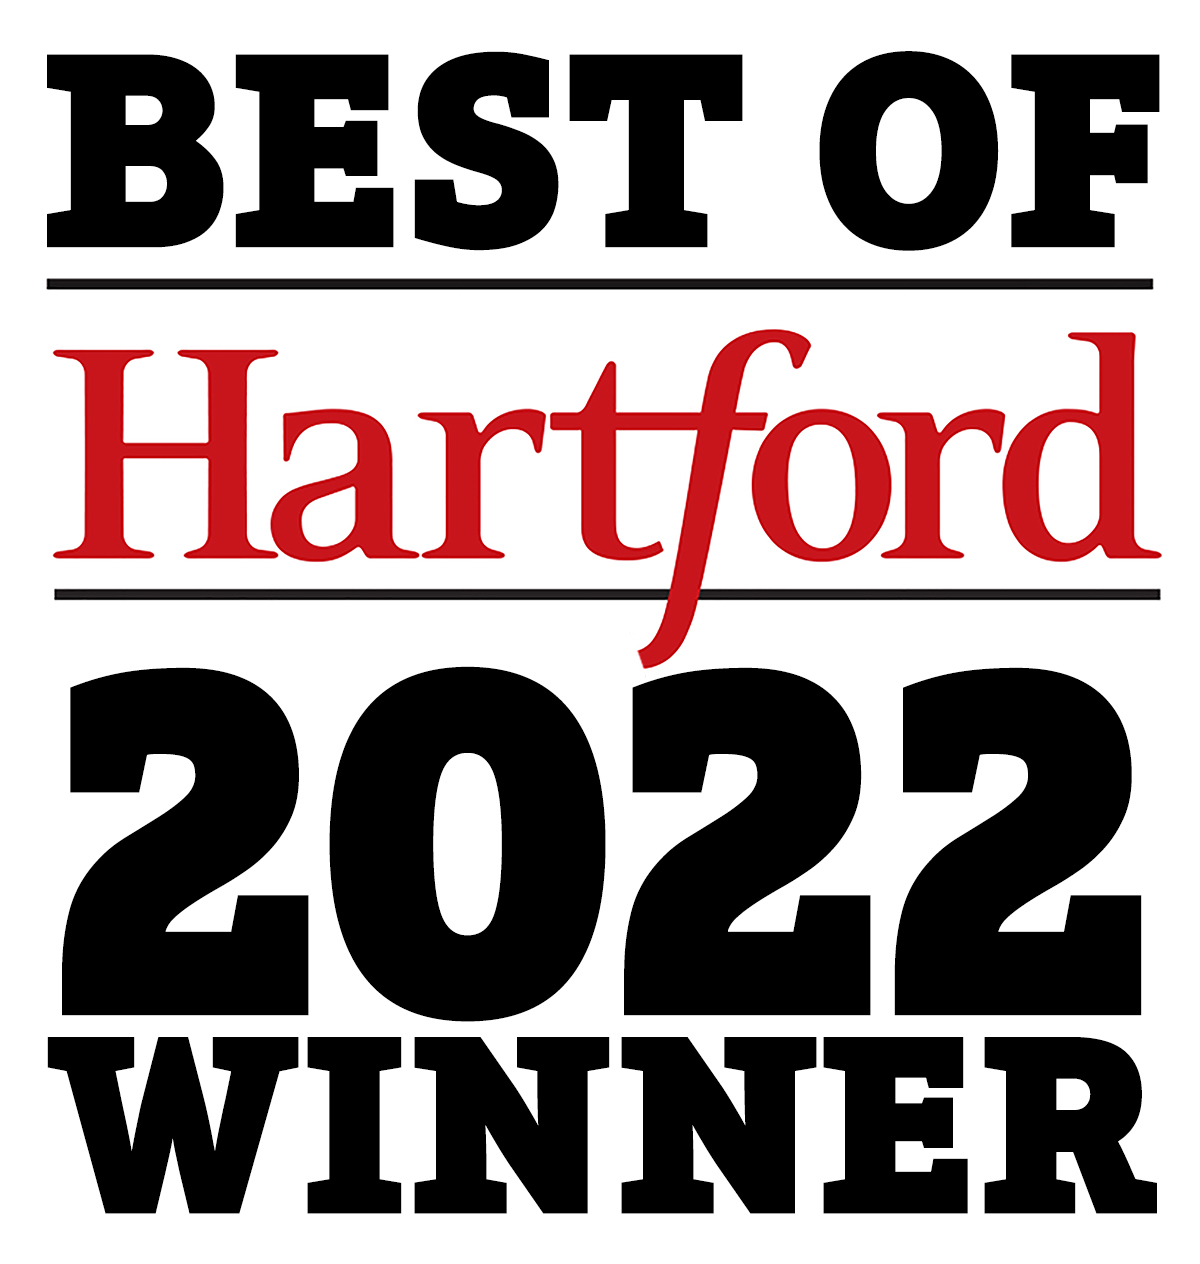 Hartford's Best '22 Winner